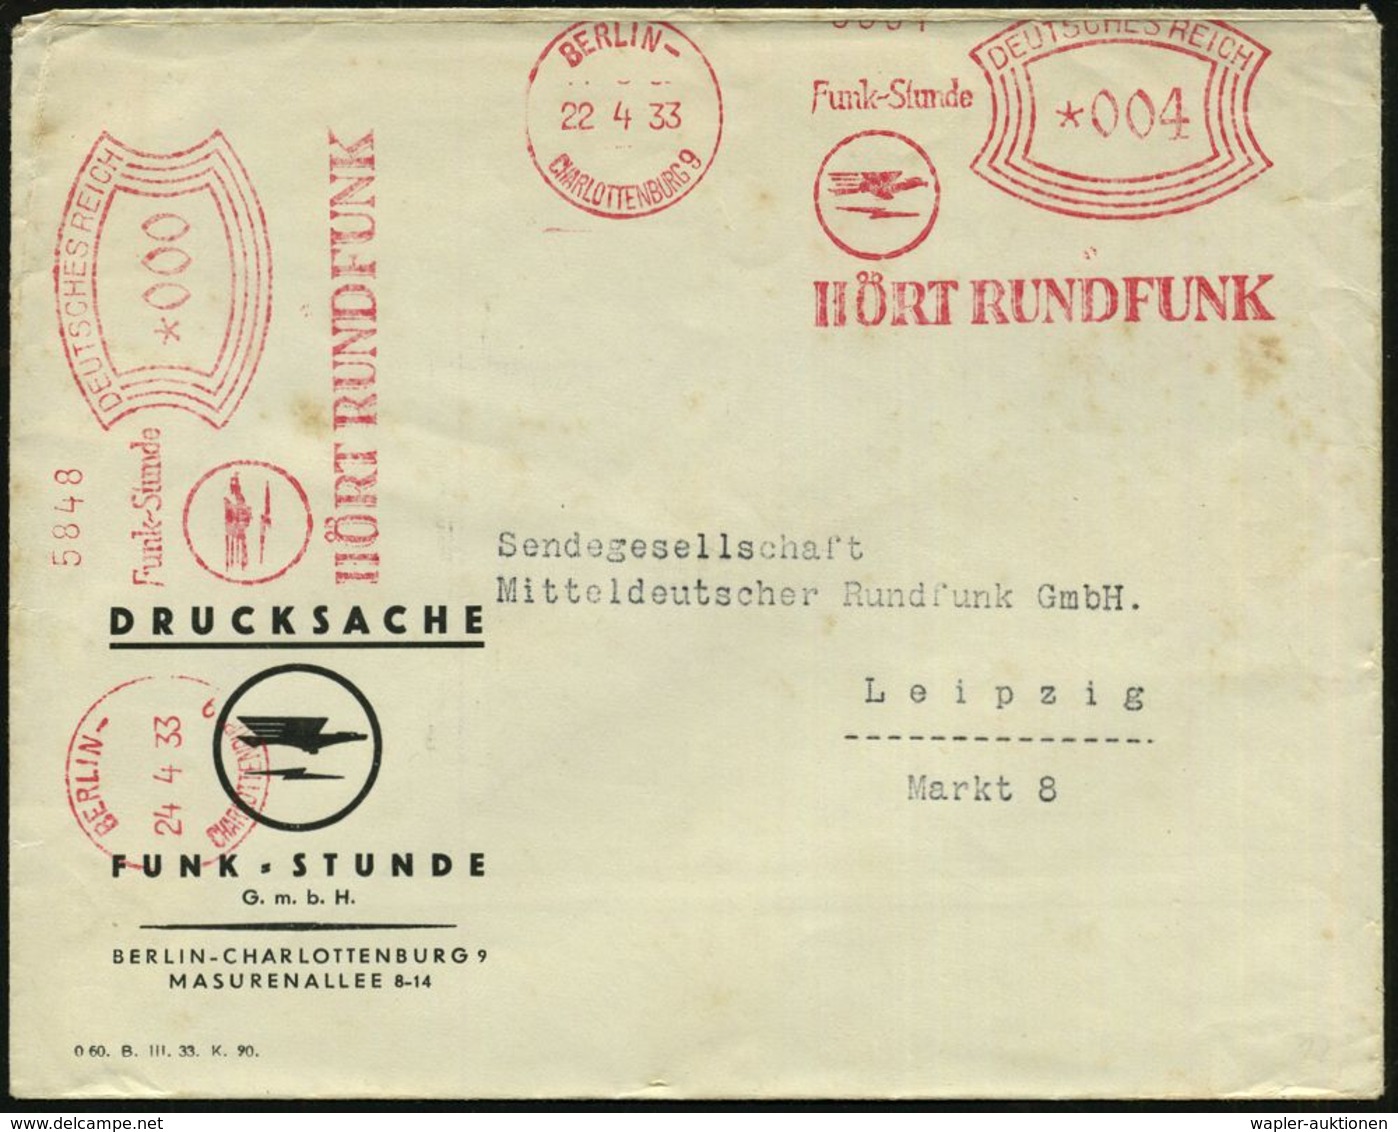 BERLIN-/ CHARLOTTENBURG9/ Funk-Stunde/ HÖRT RUNDFUNK 1933 (22.5.) AFS 004 Pf. + 000 = Sender-Logo, 2 Abdrucke (Adler, Bl - Ohne Zuordnung